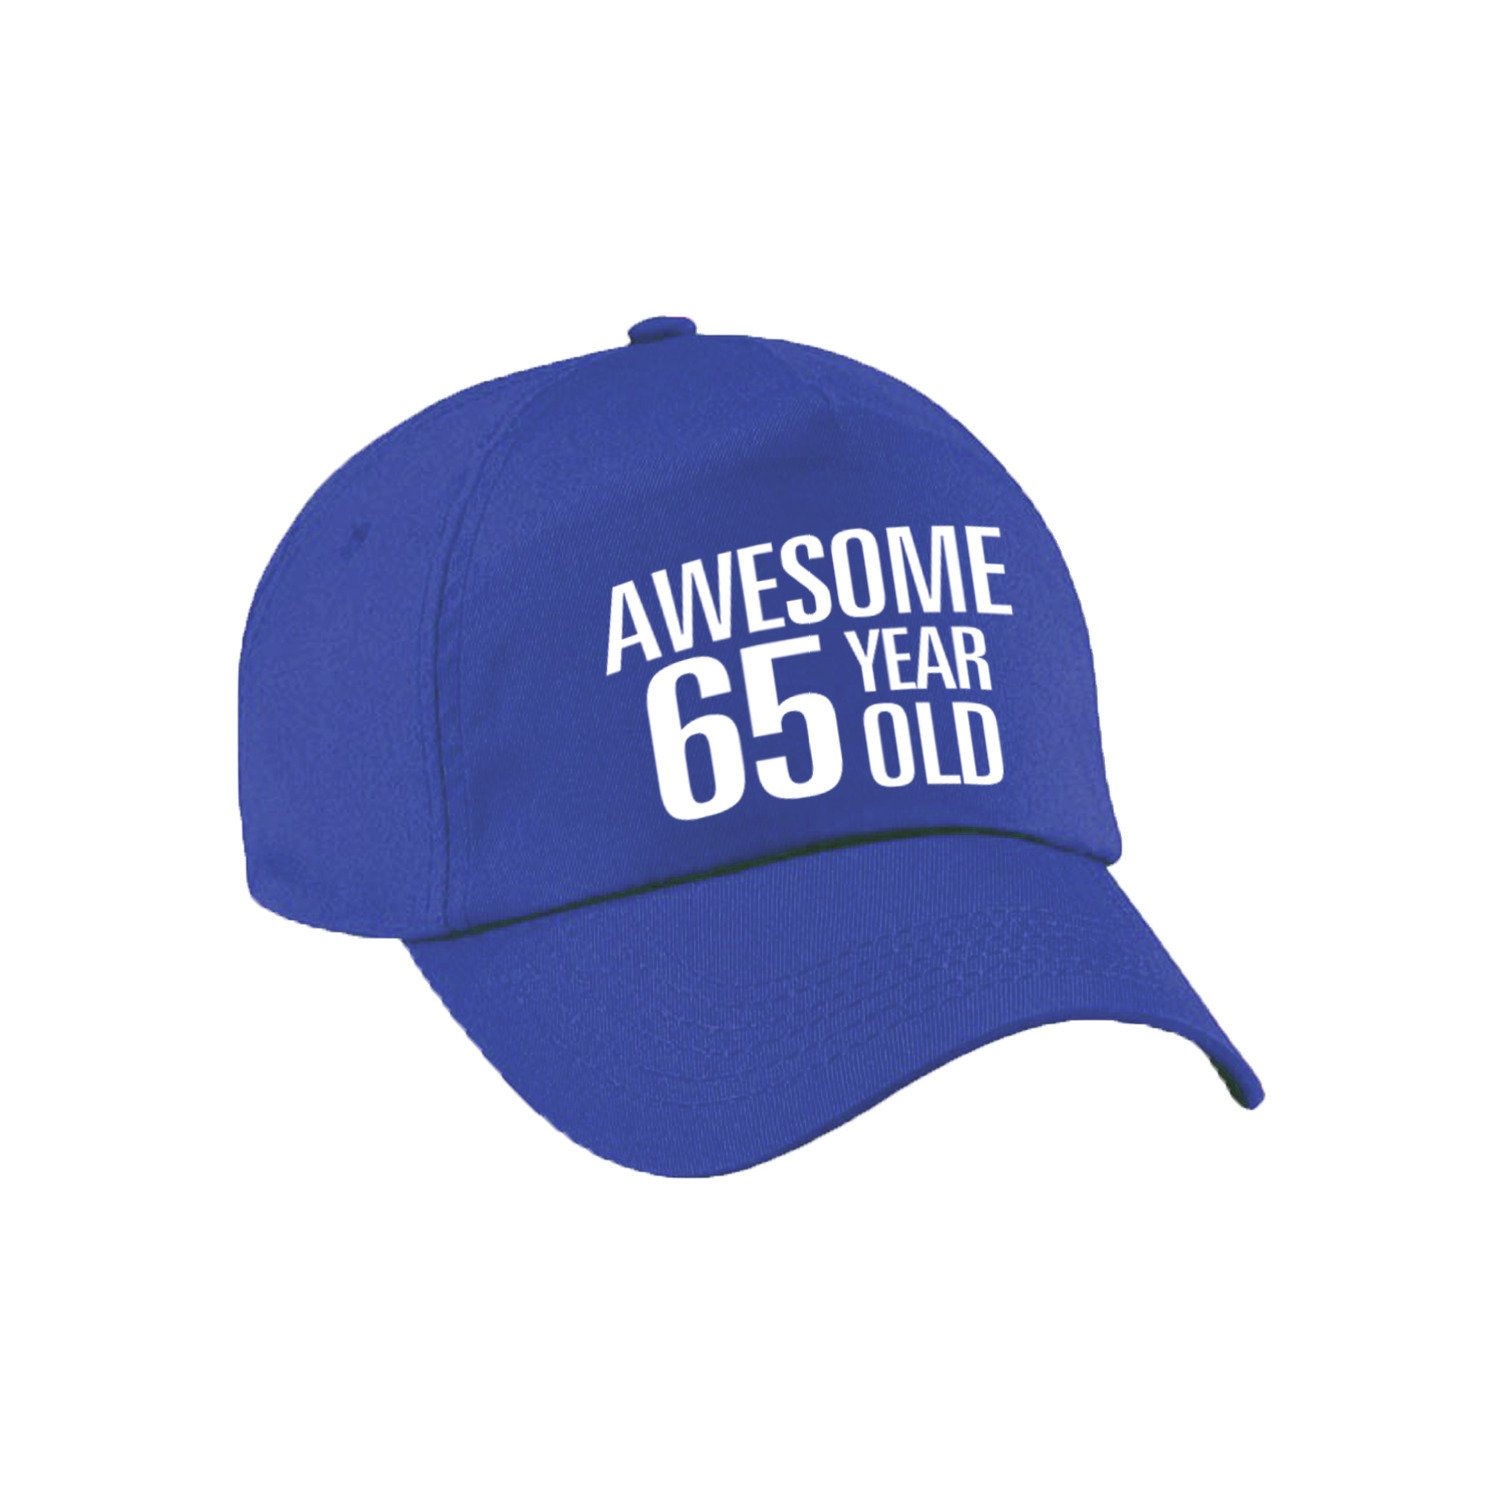 Awesome 65 year old verjaardag pet / cap blauw voor dames en heren